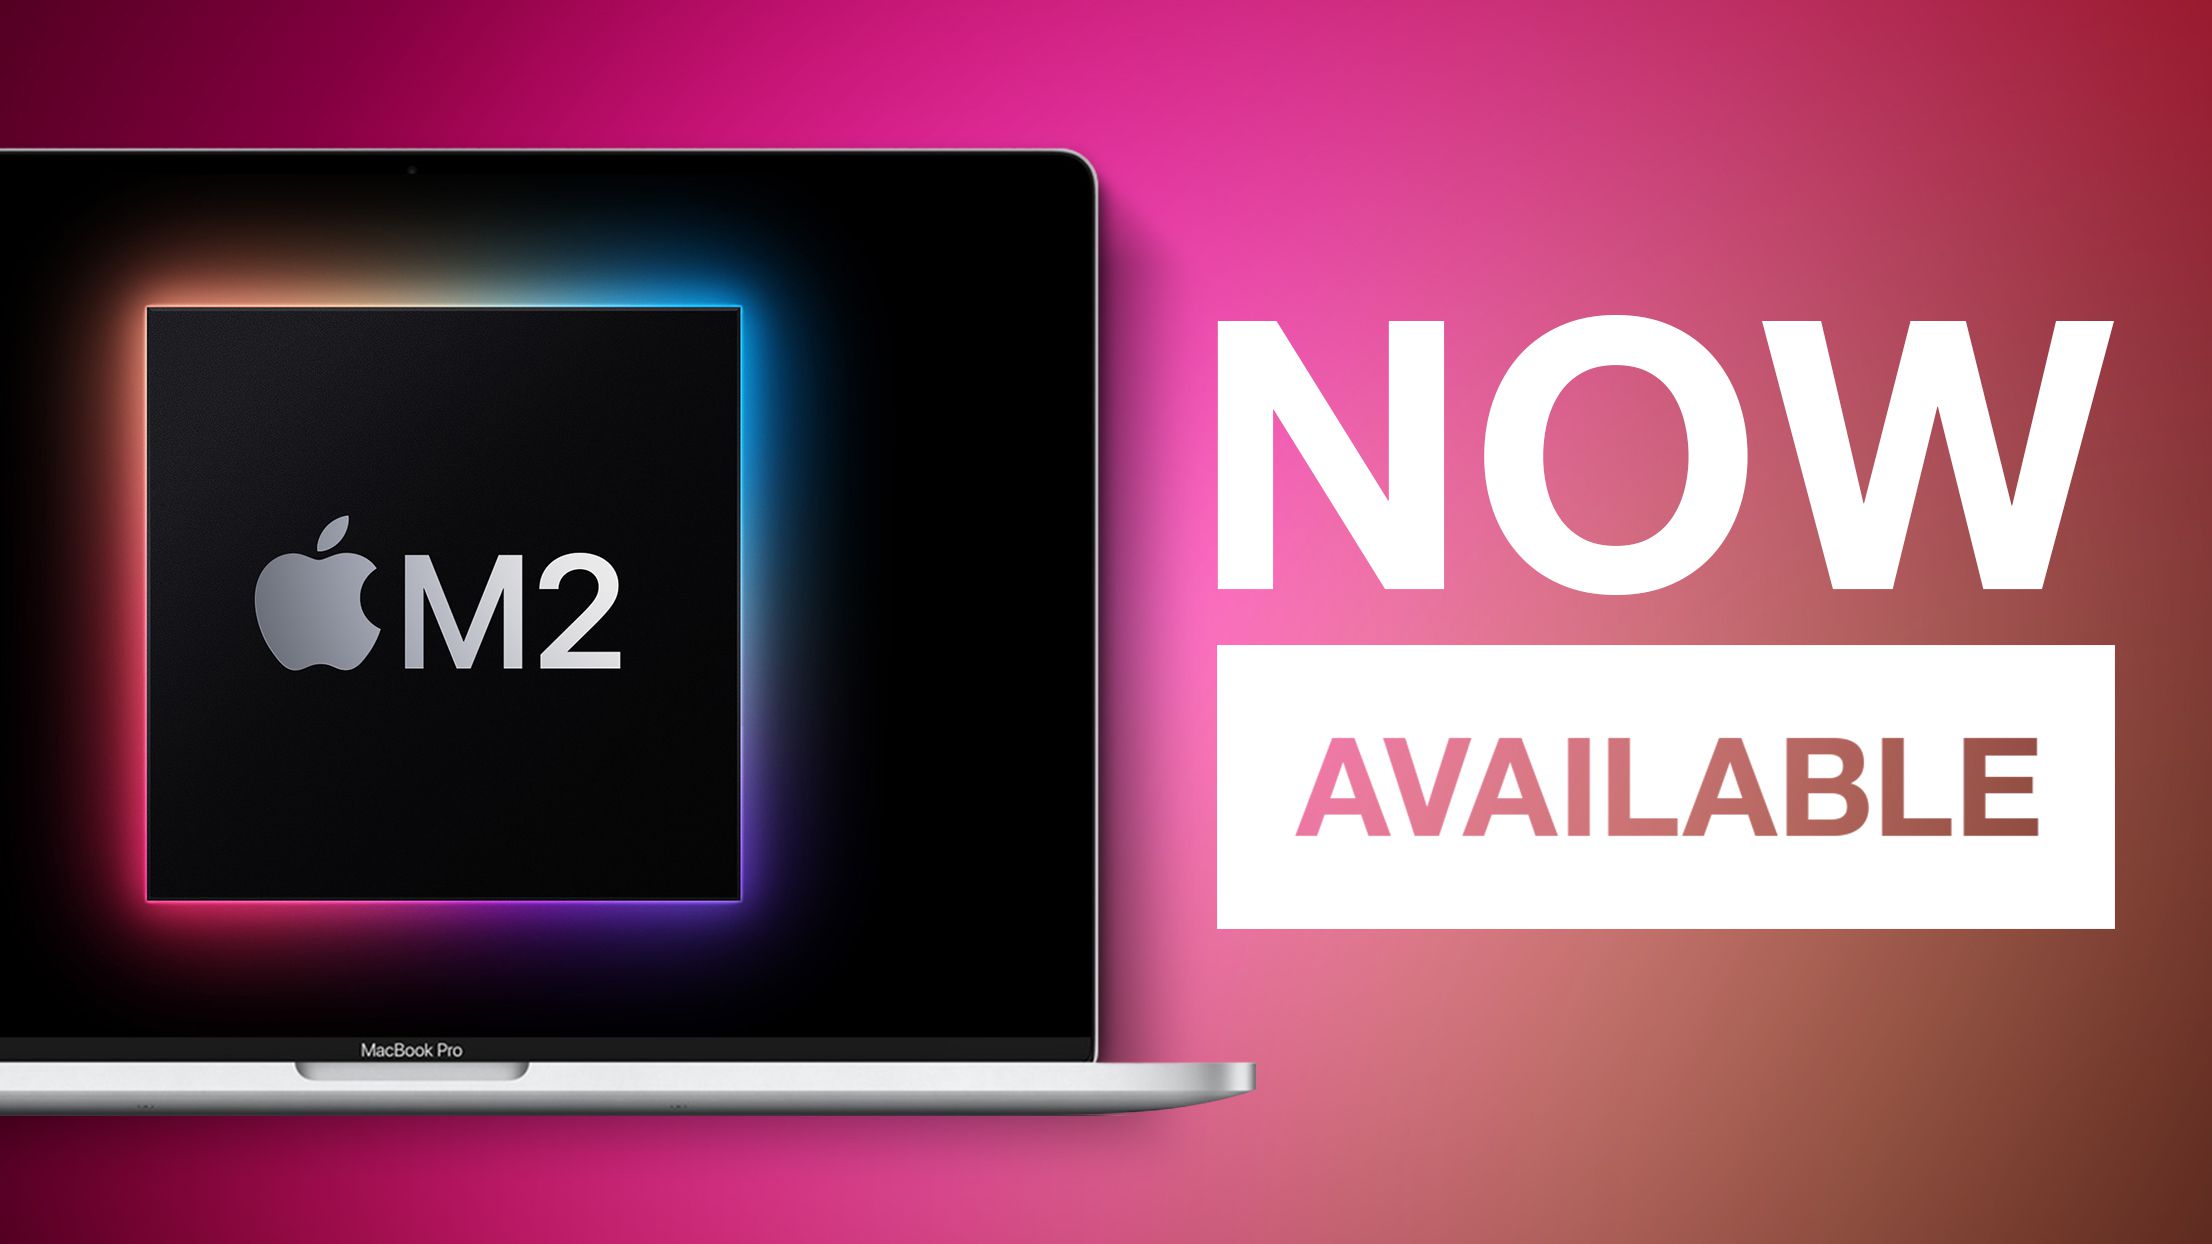 MacBook Professional de 13 polegadas com chip M2 agora disponível nas lojas da Apple